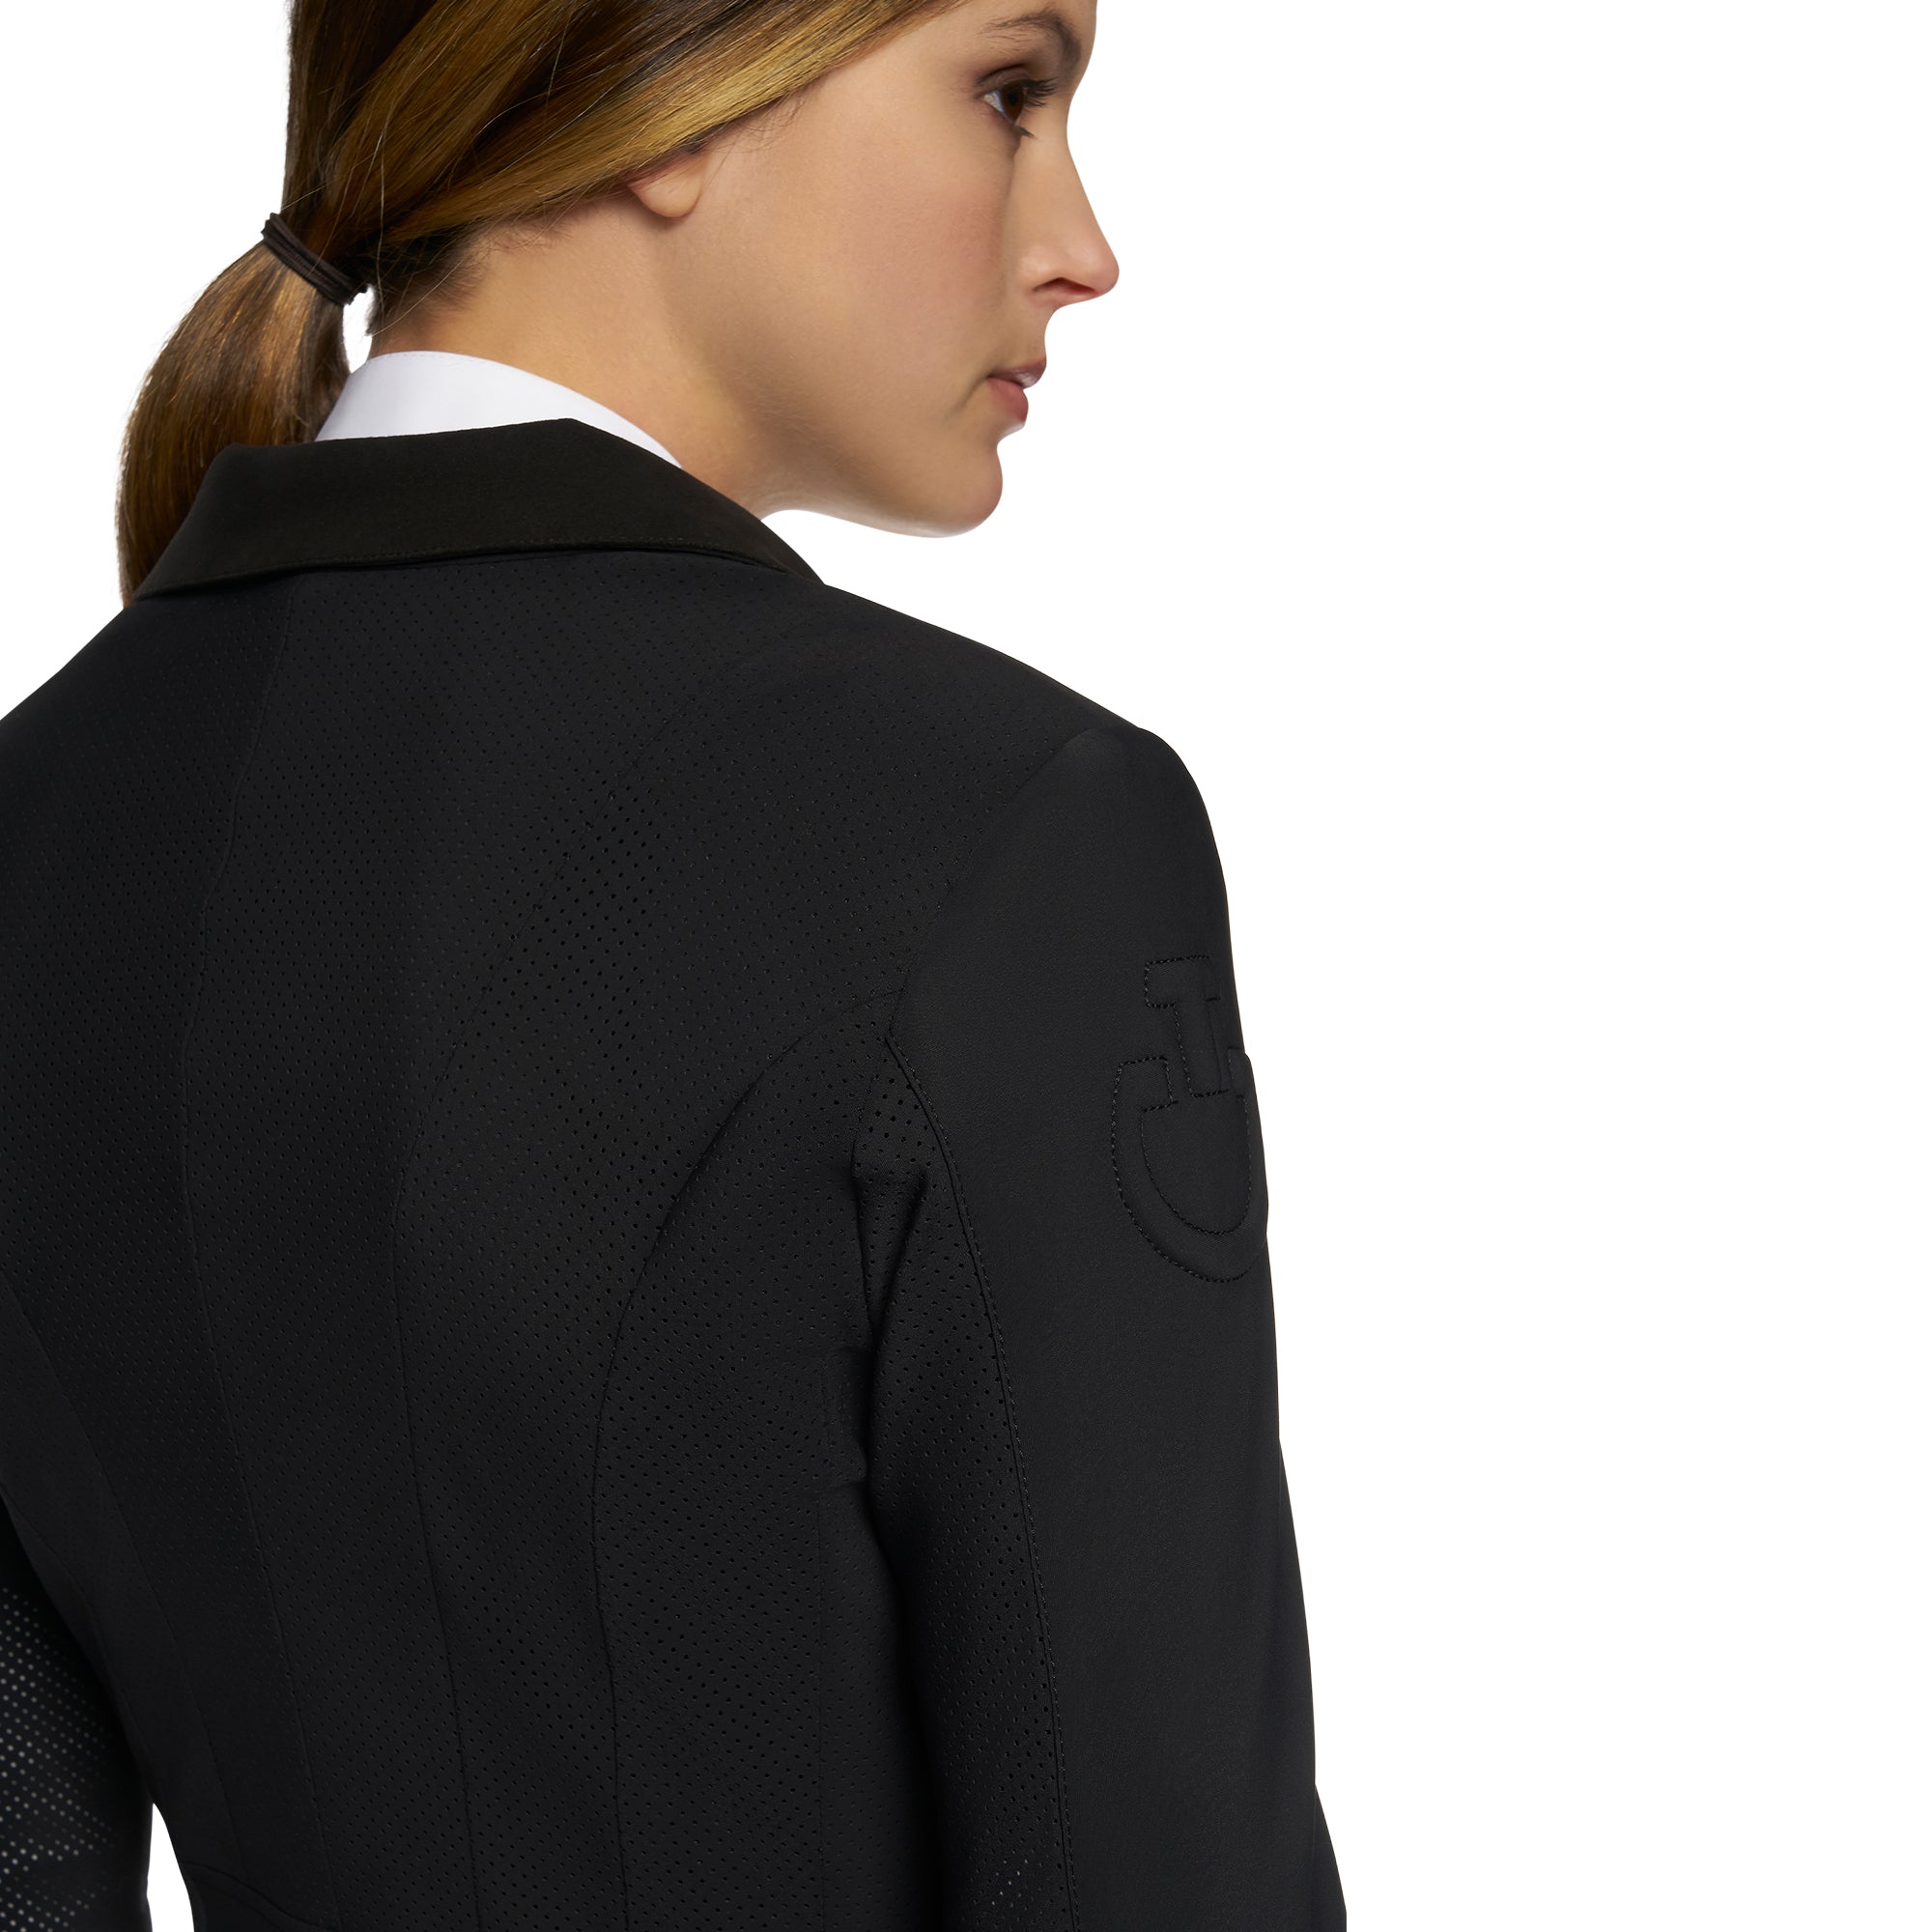 Ladies GP Perforated Show Jacket - Black